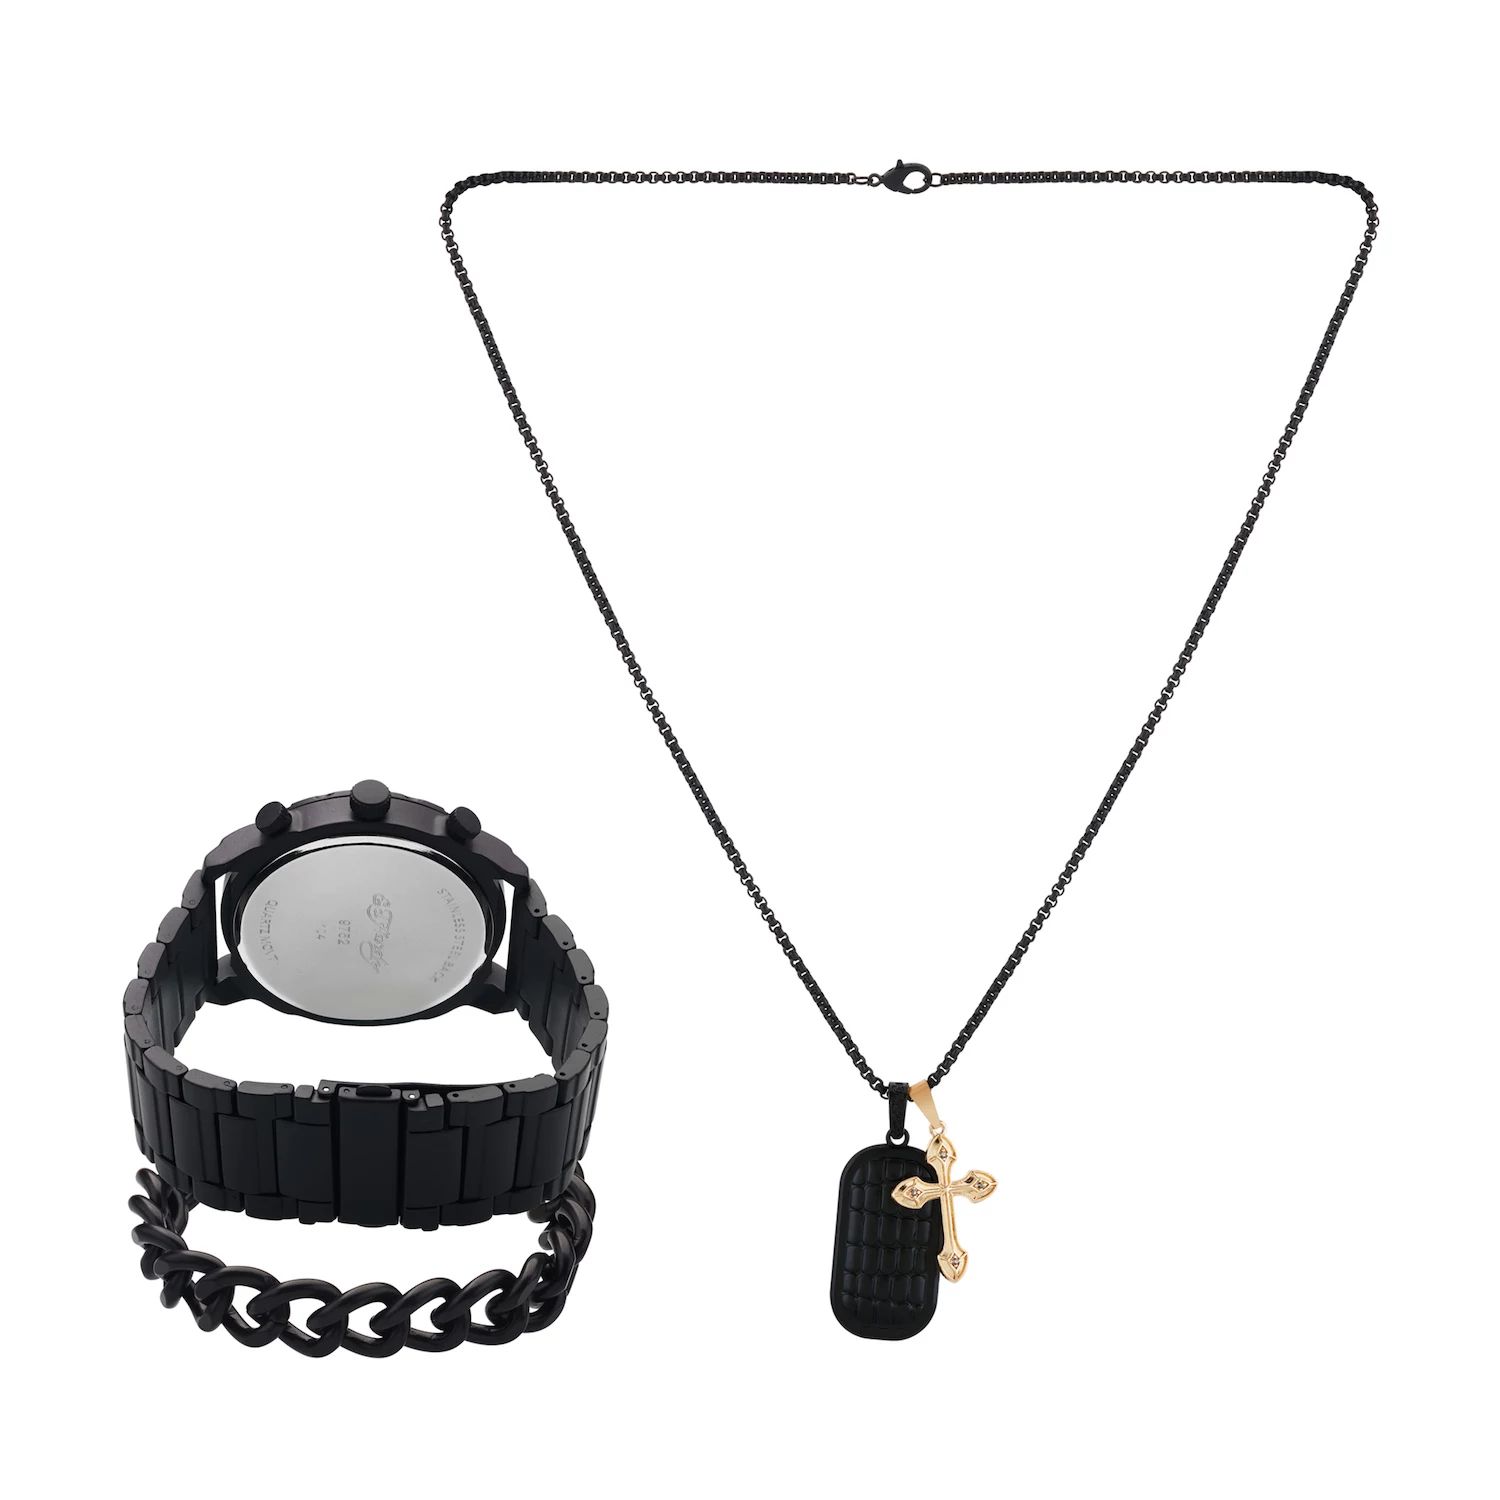 Подарочный набор из часов и ожерелья с черным металлическим браслетом 50 мм Ed Hardy кроссовки ed hardy bump white silver